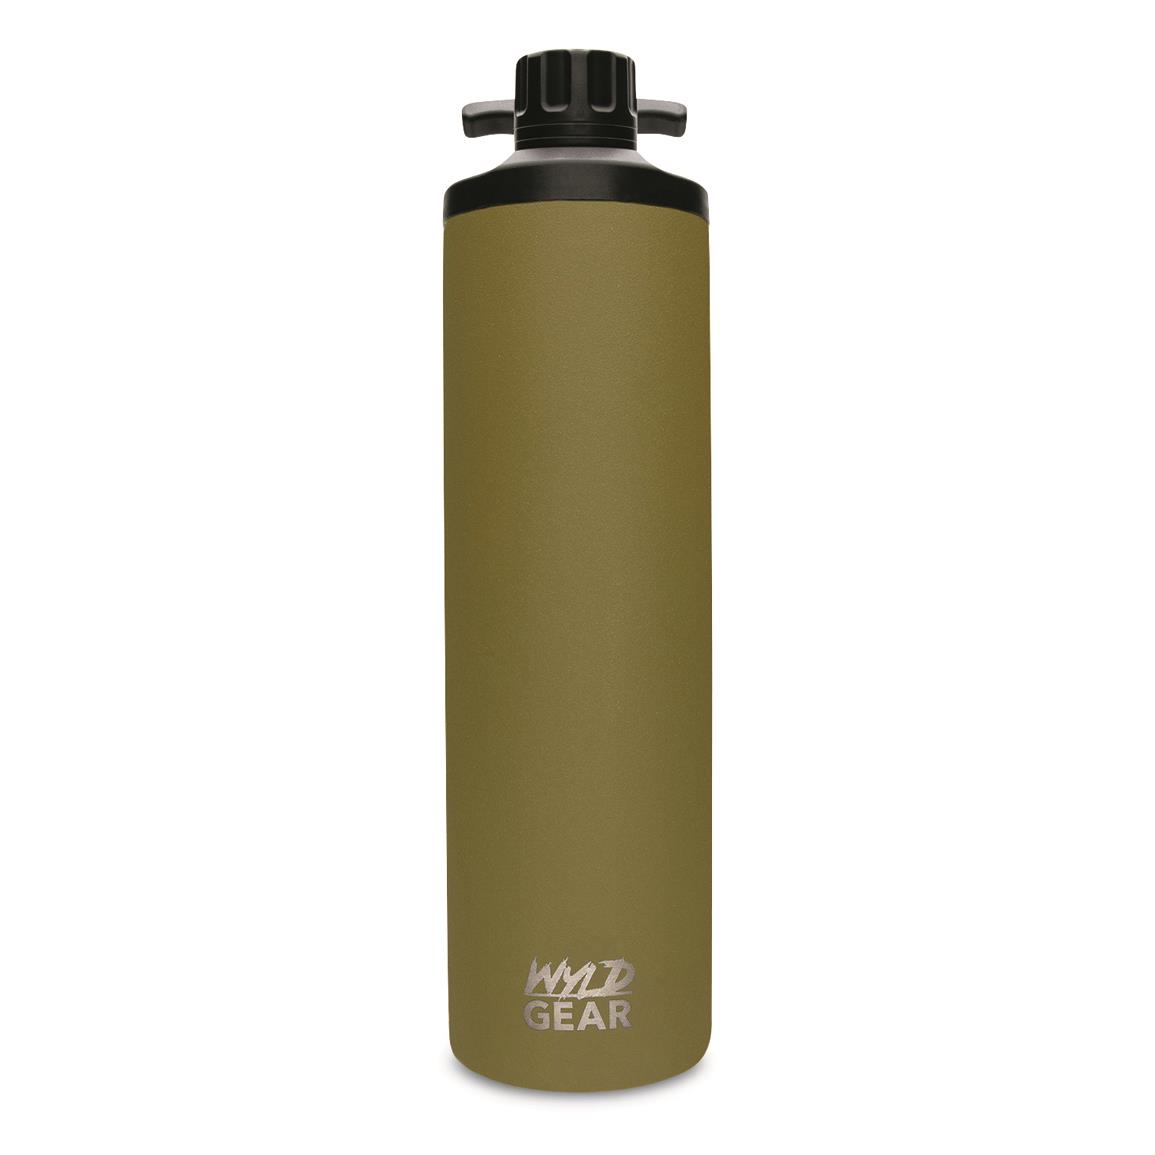 WYLD Gear Mag Bottle, 24 oz., Olive Drab Green